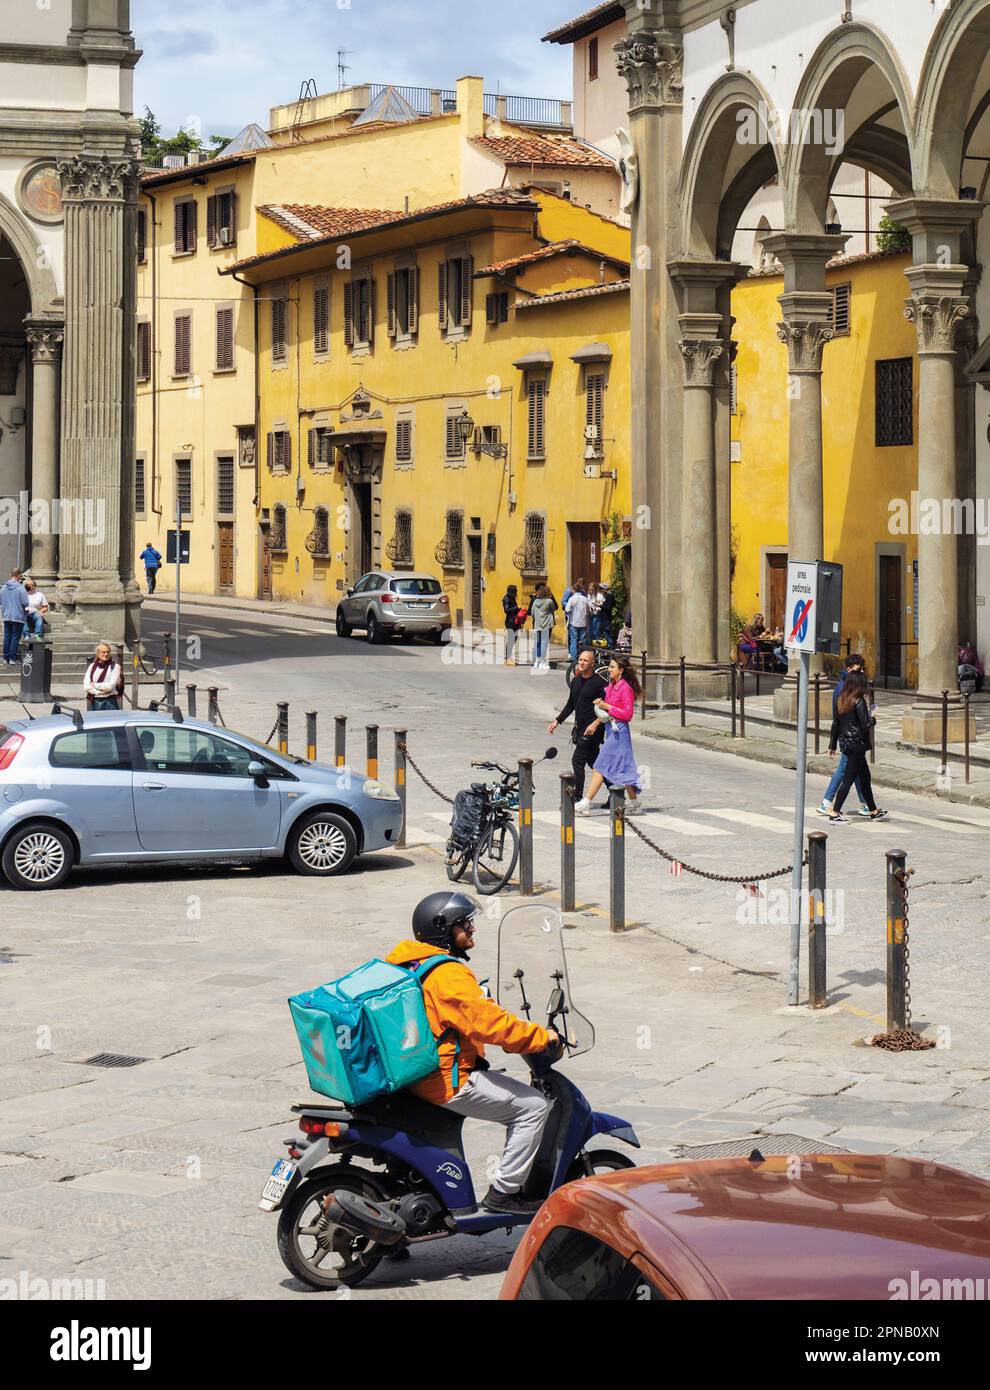 La vita quotidiana in Piazza della Santissima Annunziata. Firenze, Toscana, Italia. Il centro storico di Firenze è patrimonio dell'umanità dell'UNESCO Foto Stock